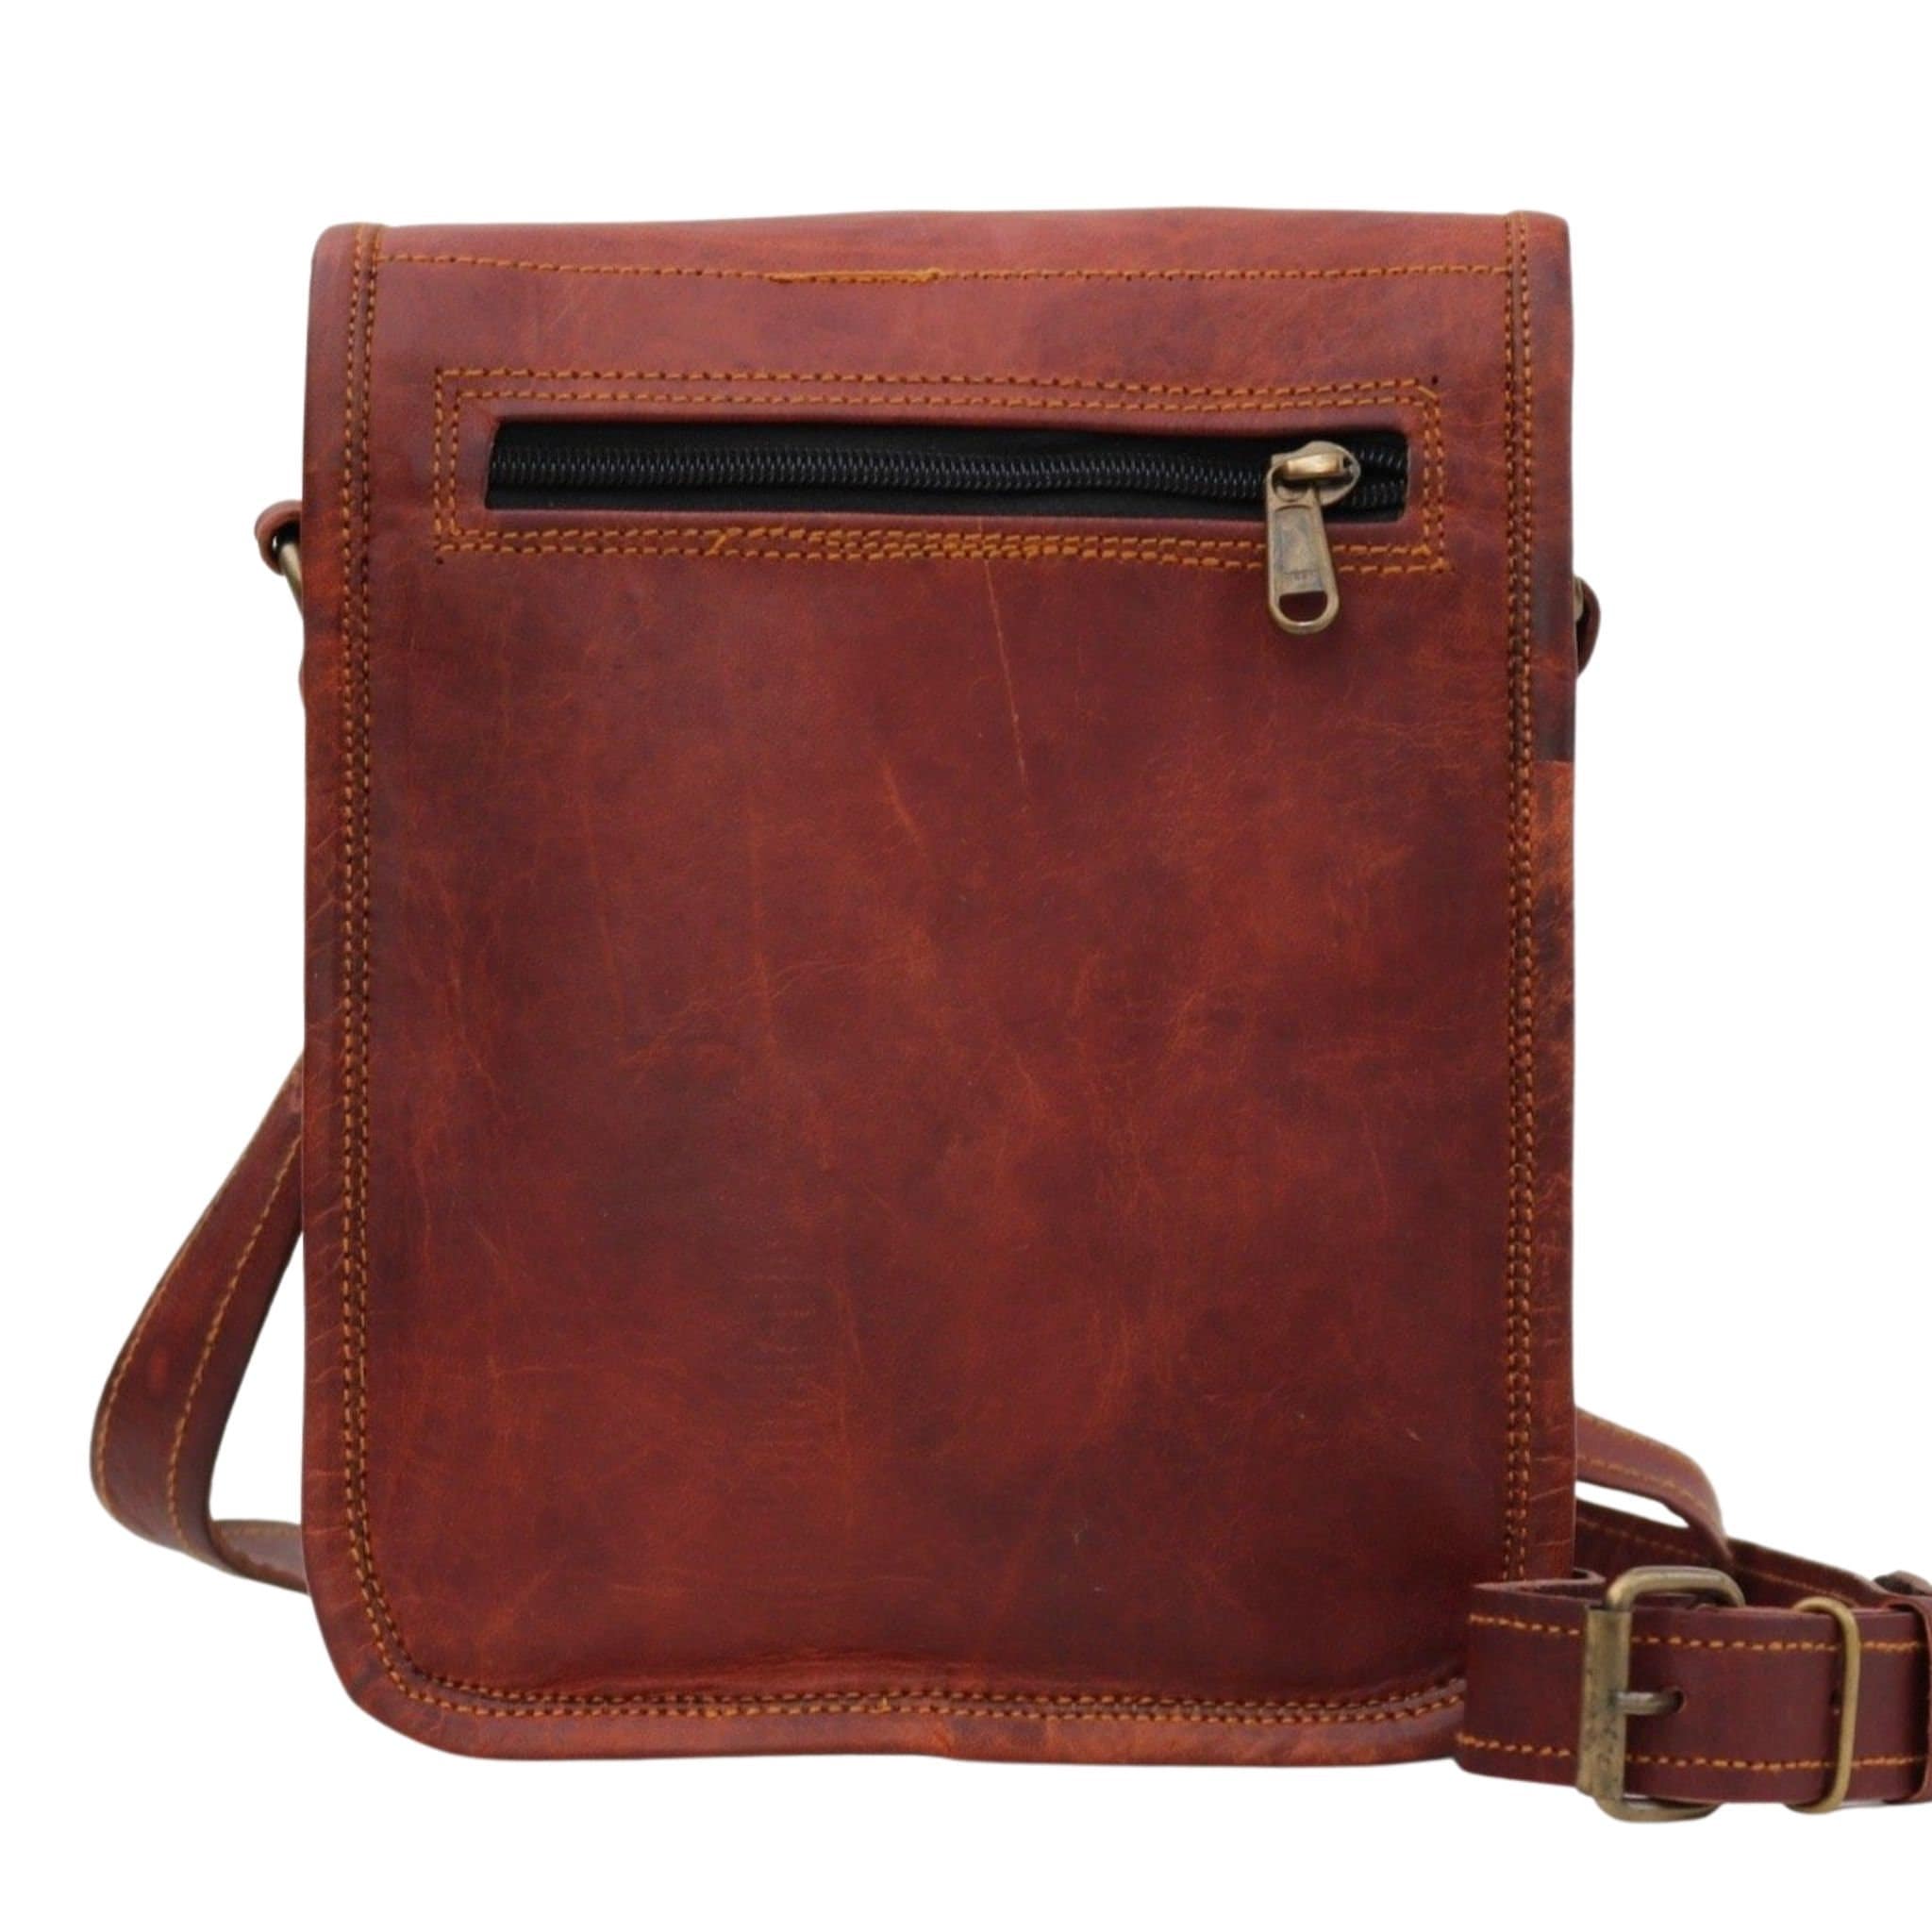 LEATHER SHOULDER BAG Handmade Vintage Look Leather - Etsy UK